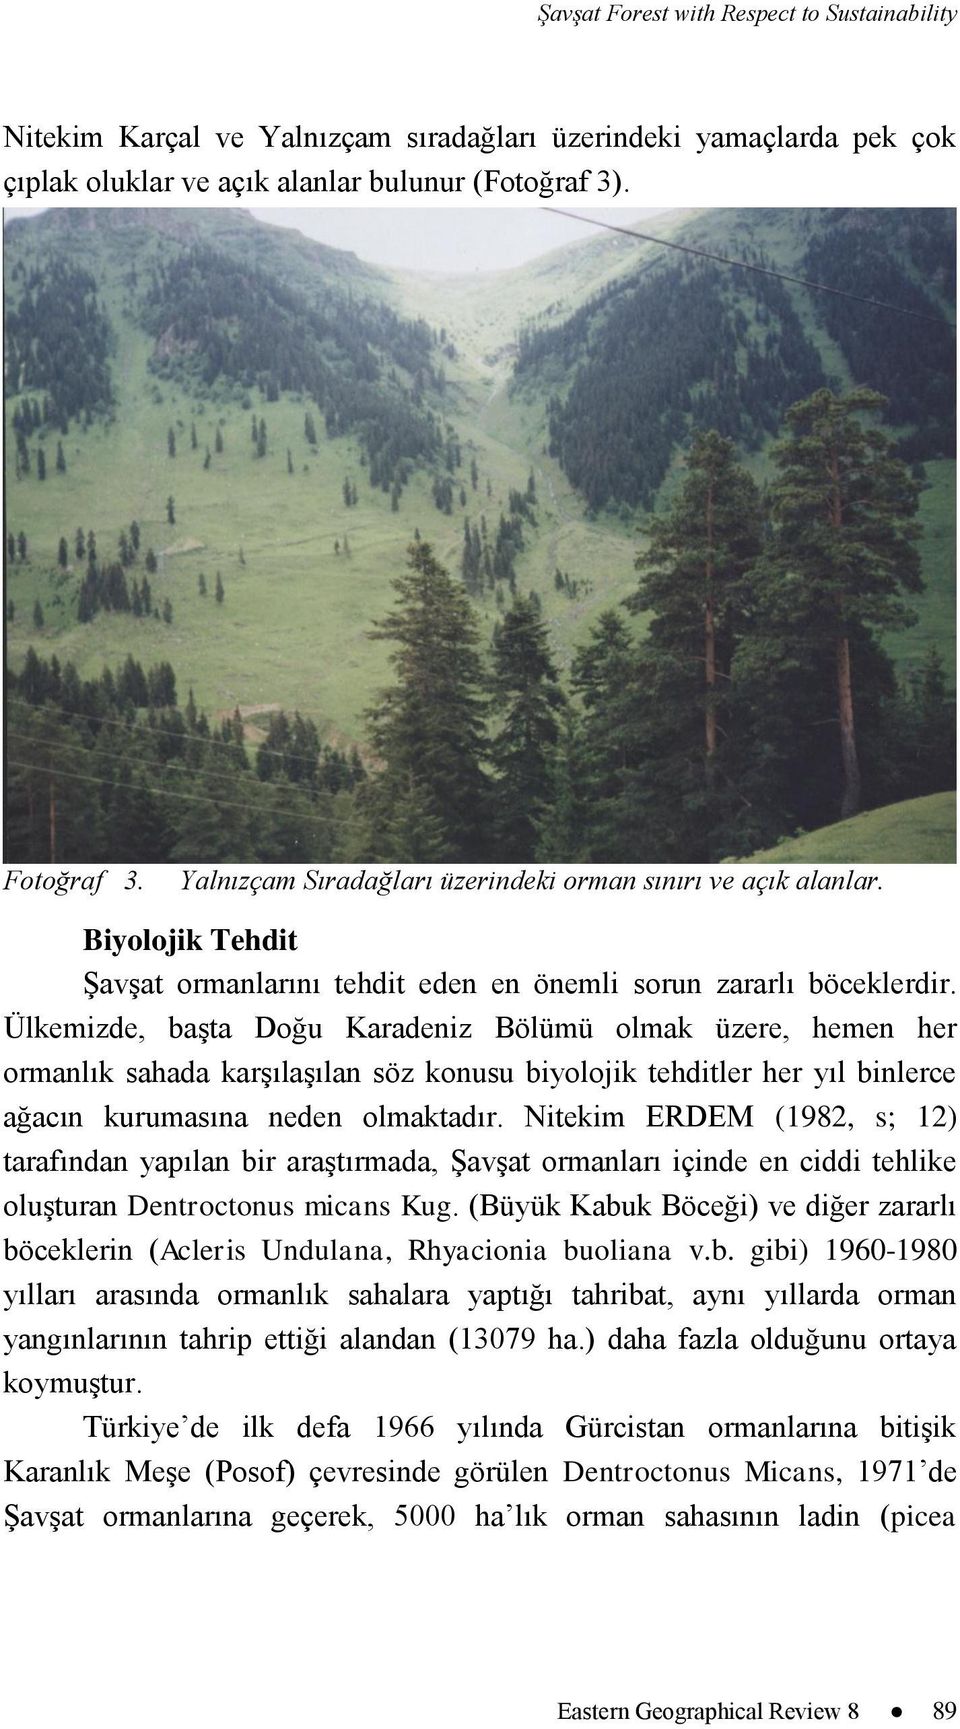 Ülkemizde, baģta Doğu Karadeniz Bölümü olmak üzere, hemen her ormanlık sahada karģılaģılan söz konusu biyolojik tehditler her yıl binlerce ağacın kurumasına neden olmaktadır.